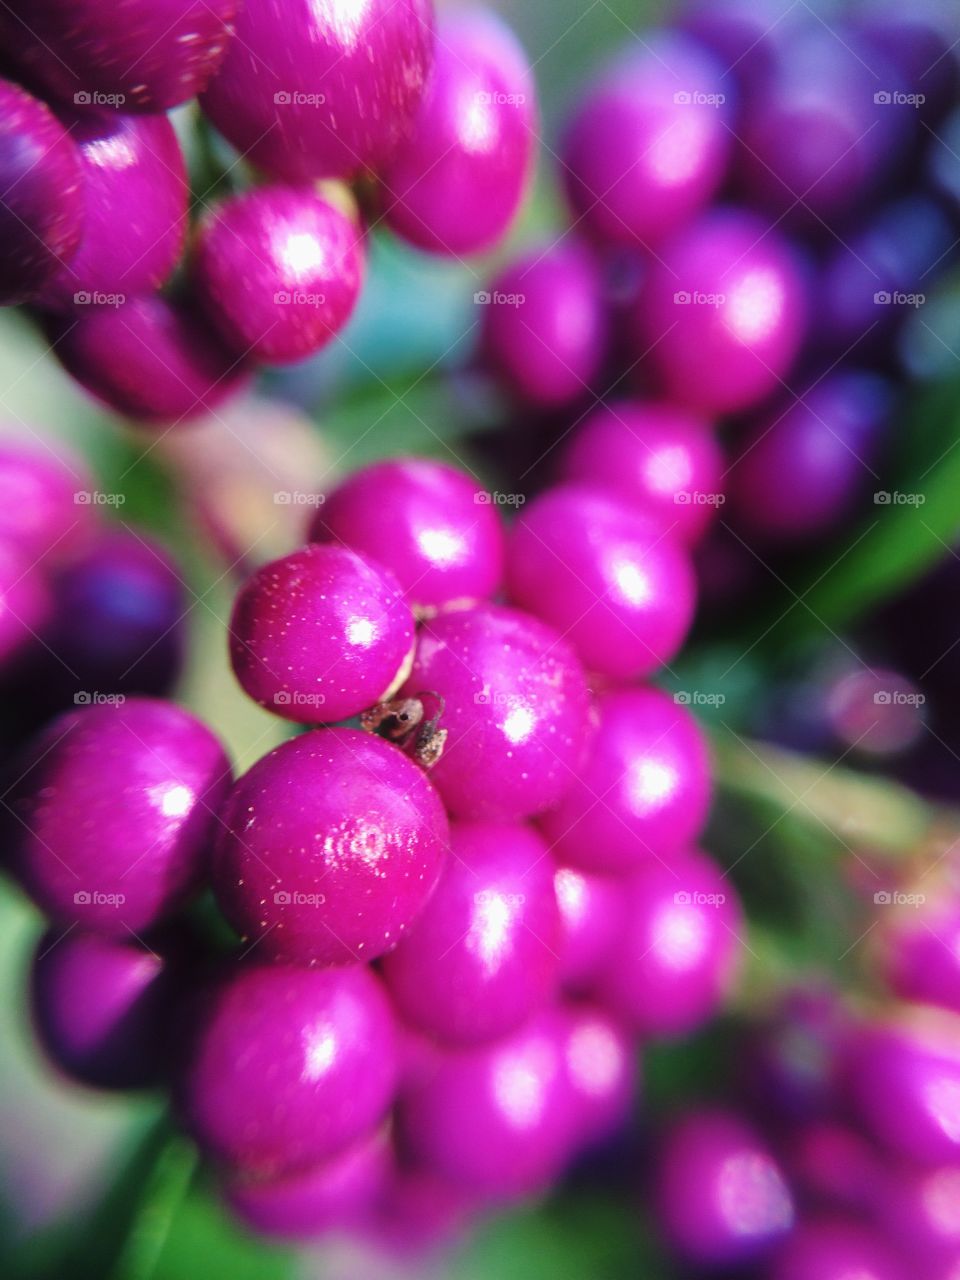 Small purple balls